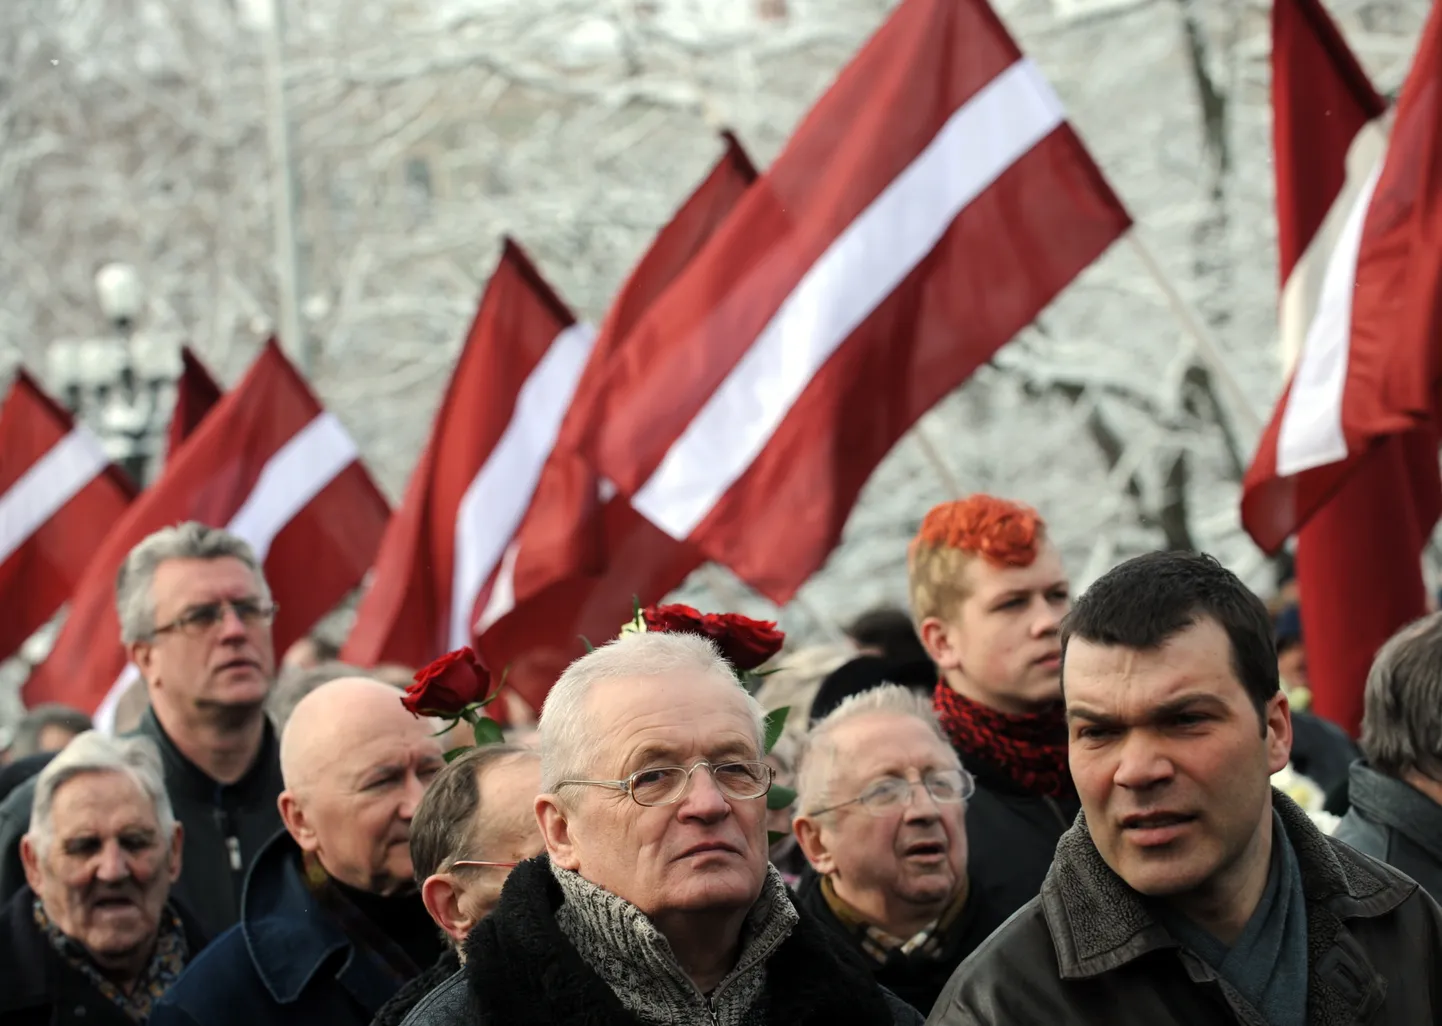 Biedrības "Daugavas vanagi Latvijā" rīkotā gājiena dalībnieki latviešu leģionāru piemiņas dienā caur jauniešu veidoto karogu aleju dodas nolikt ziedus pie Brīvības pieminekļa.